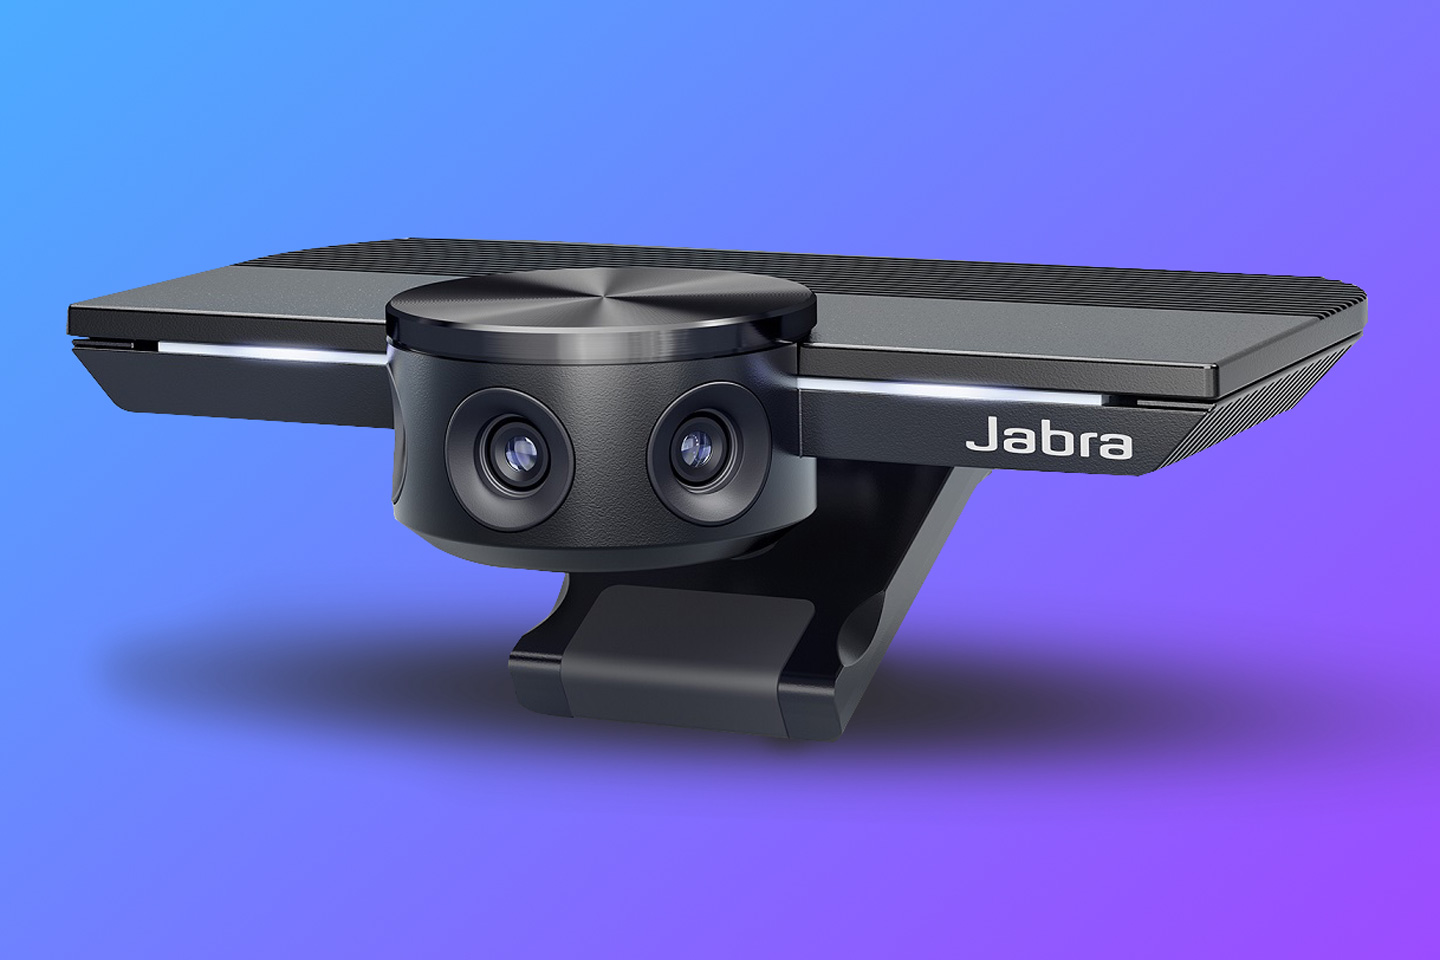 Kamera internetowa Jabra z trzema obiektywami i szerokim kątem widzenia 180°, całkowicie miażdżąca centrum Apple